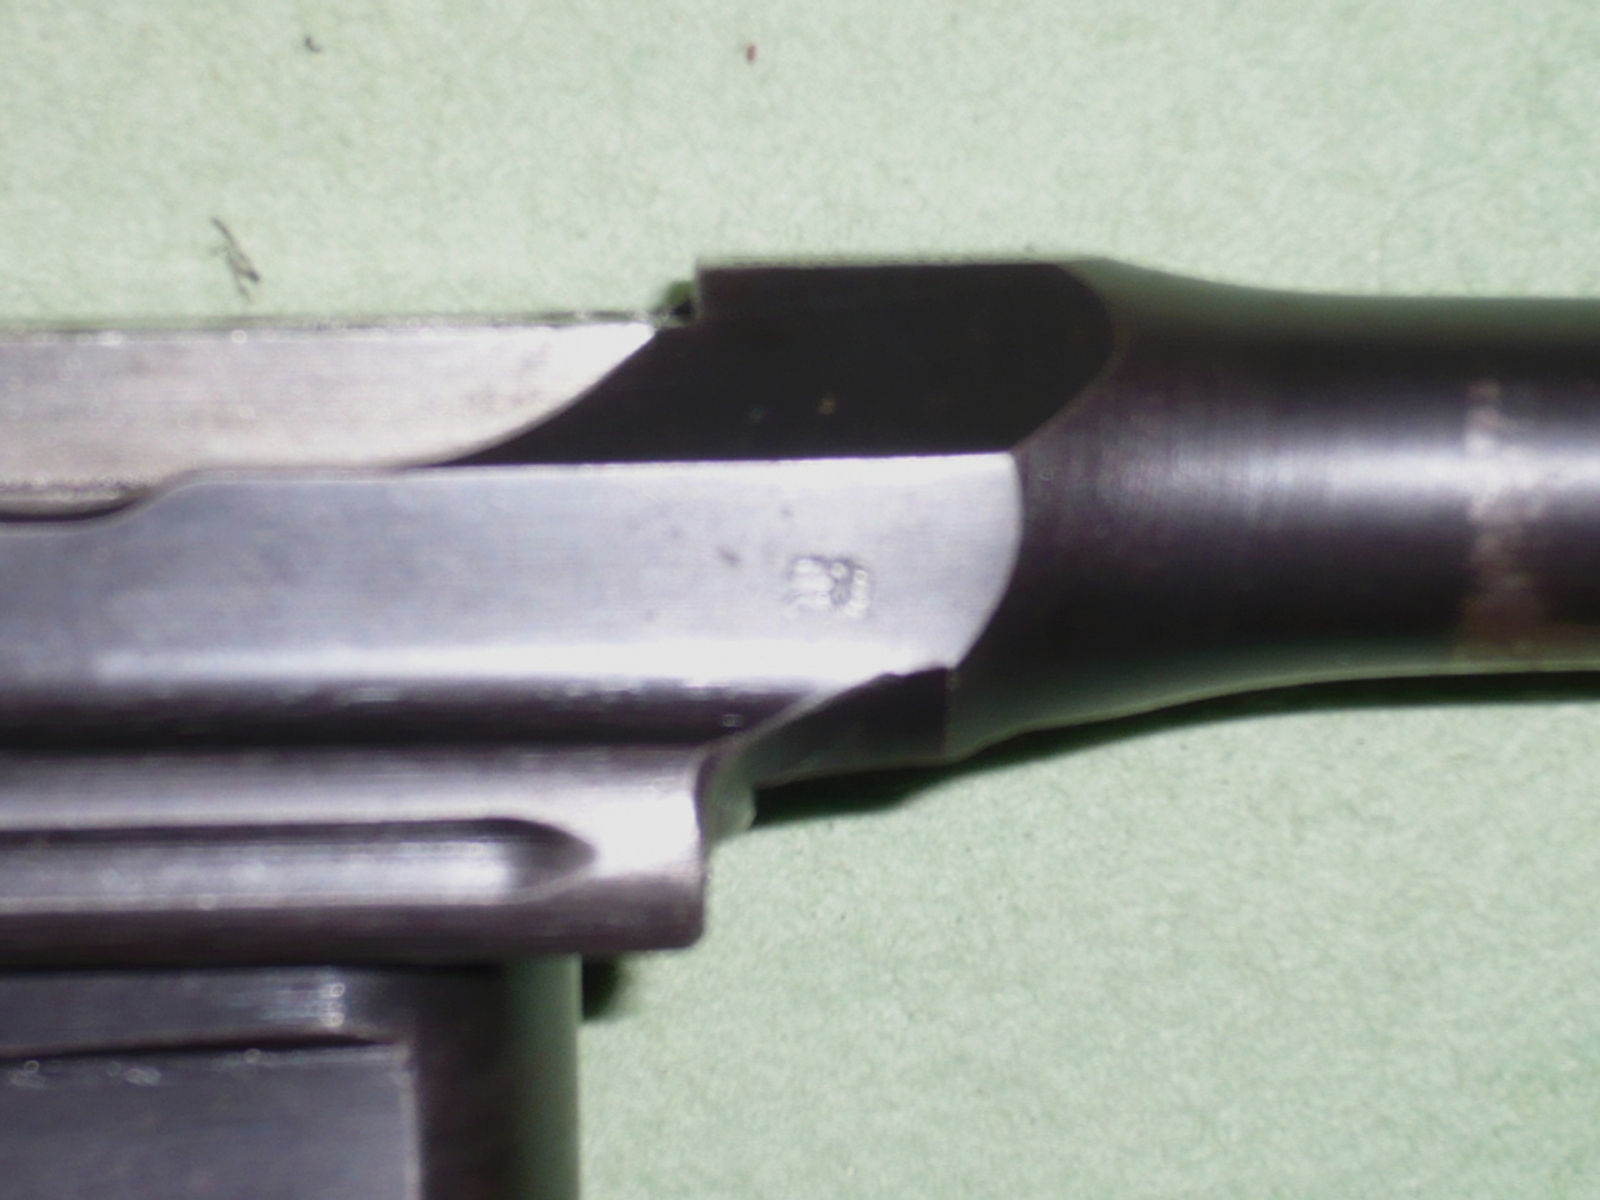 1 Pistole Mauser C96 mit anschlagschaft, Kal. 7,63mmMauser